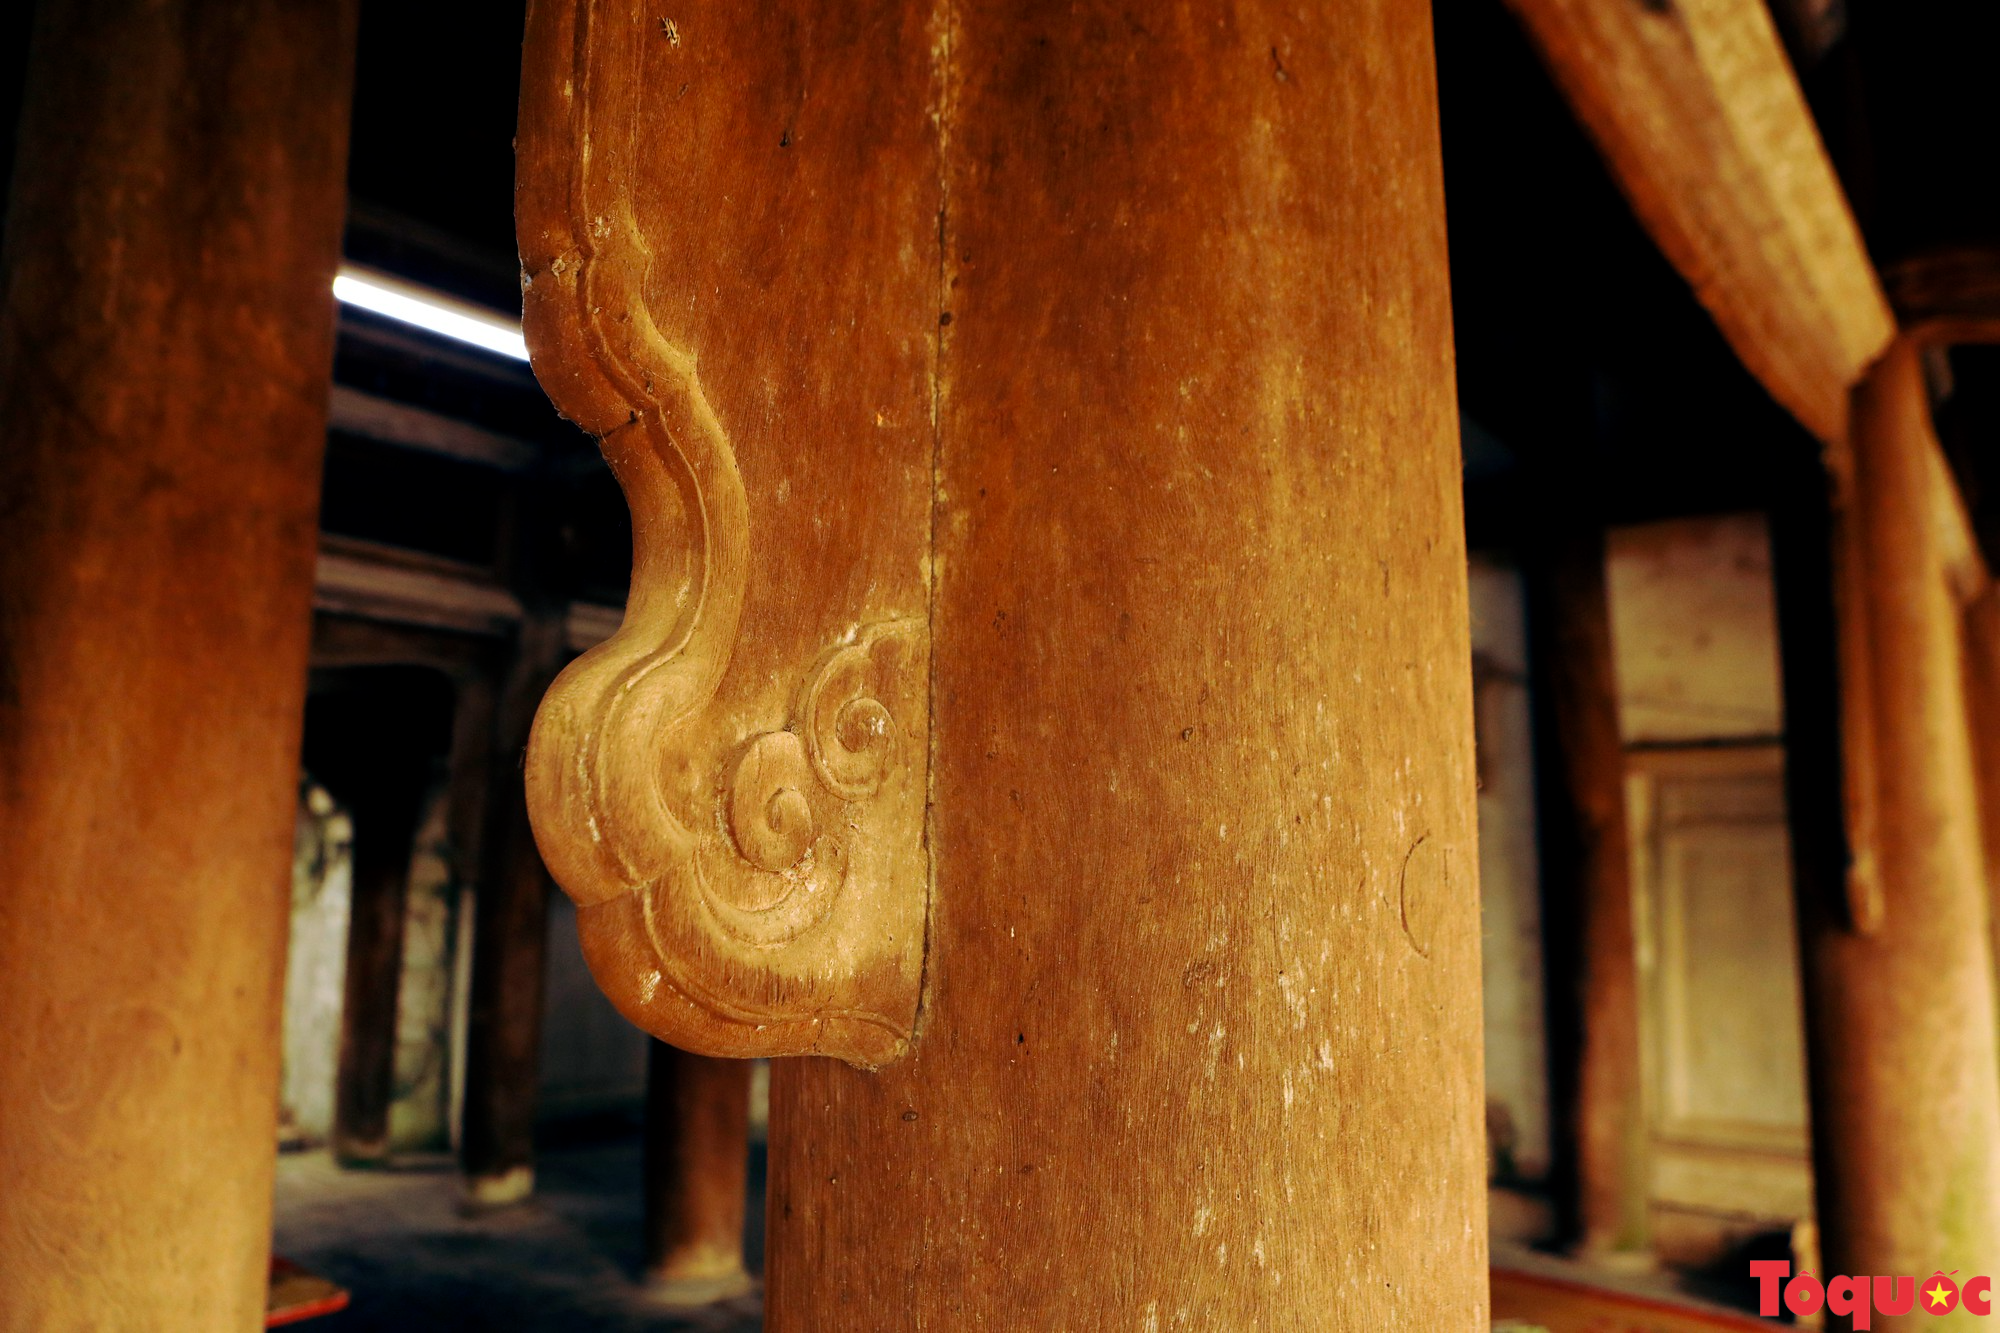 Đền đá Phú Đa kiến trúc độc đáo, đậm chất văn hóa Việt cổ - Ảnh 9.